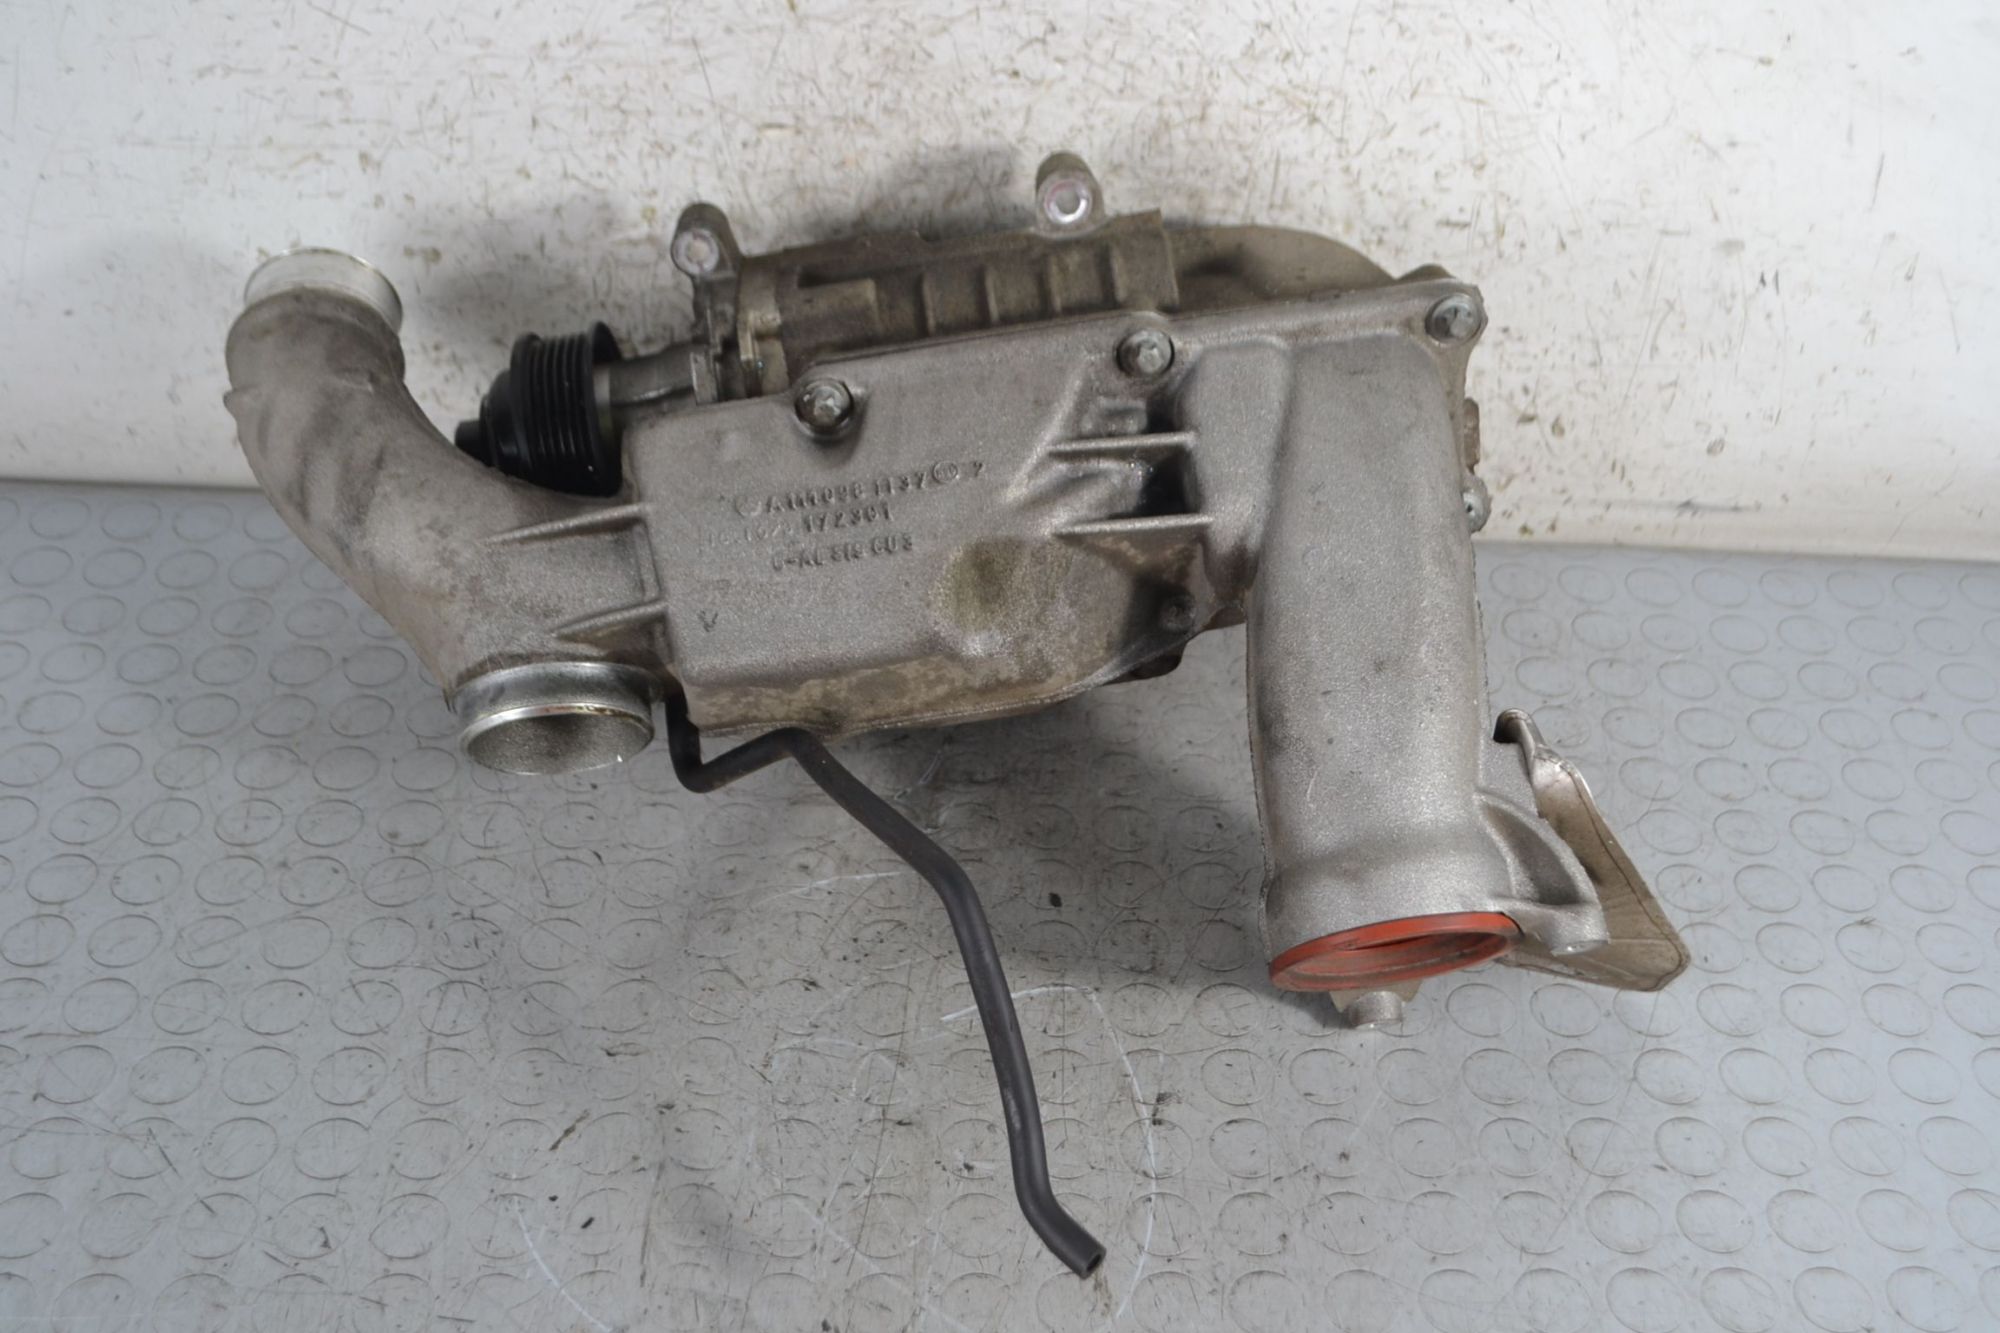 Compressore Volumetrico Mercedes SLK R170 200 Kompressor dal 1996 al 2000 Cod a1110981137  1694444752732